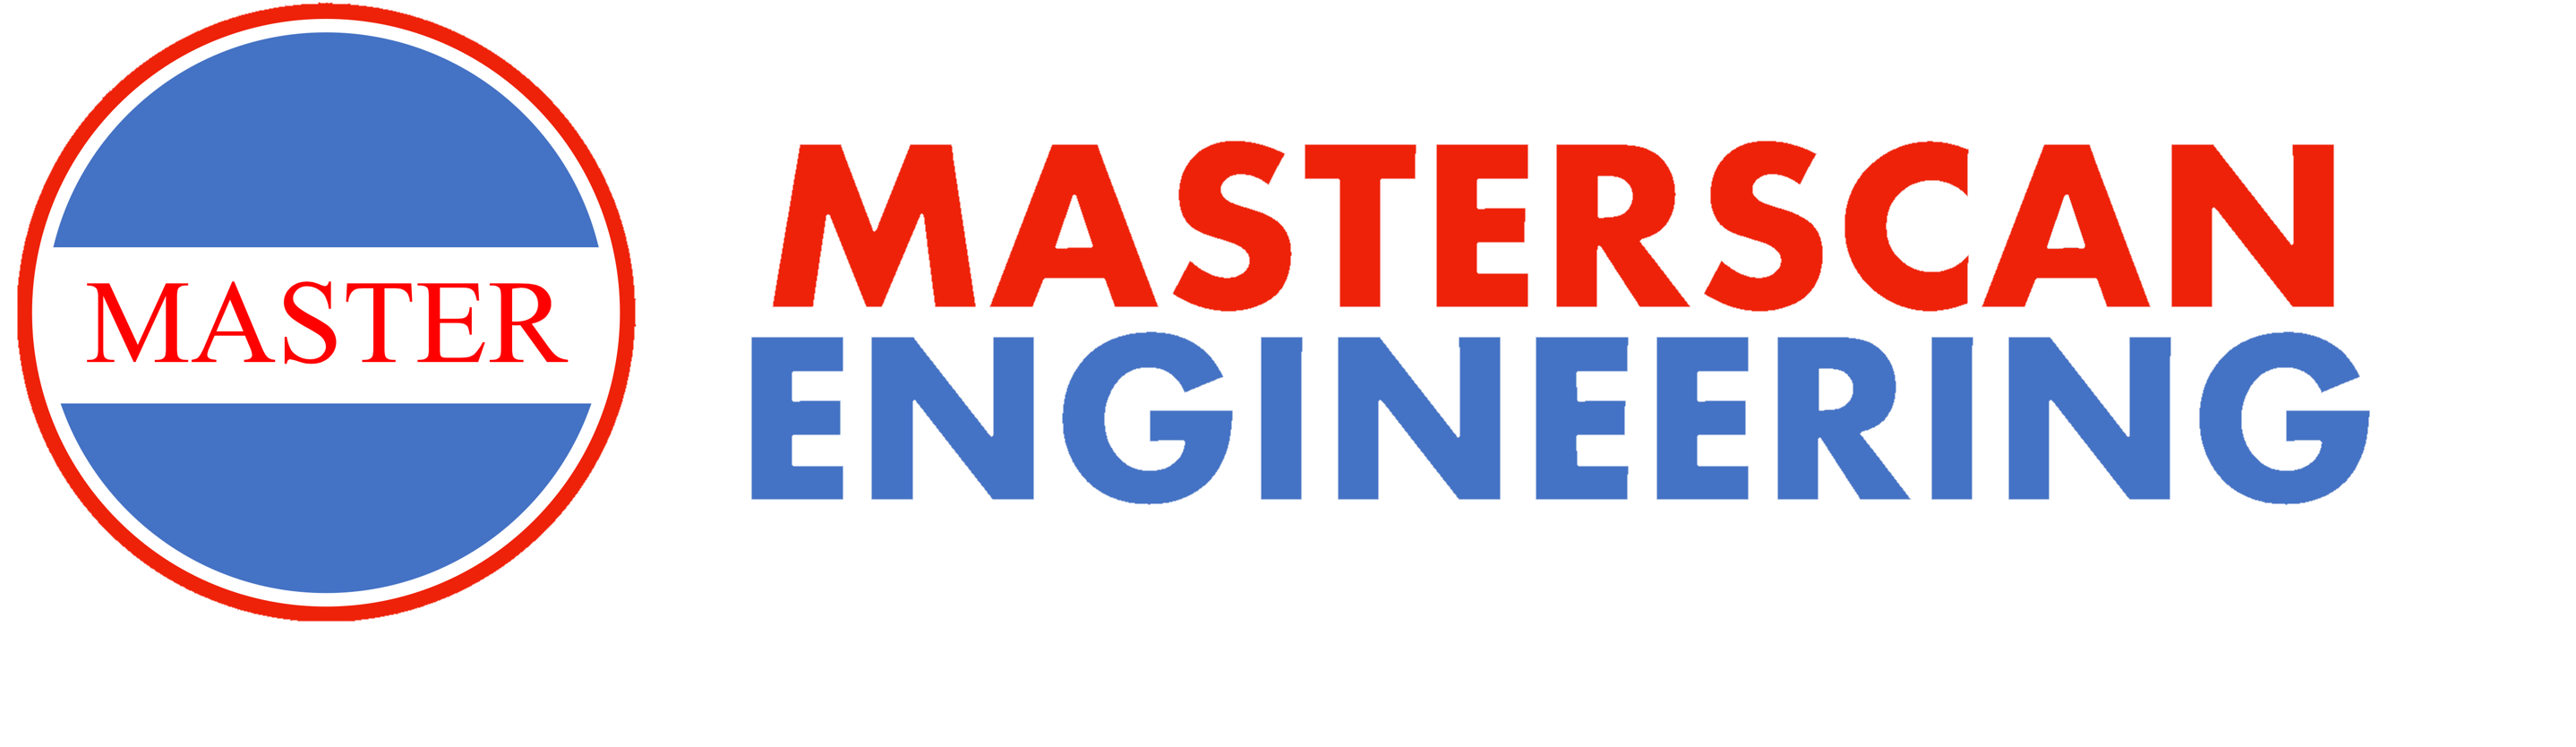 Masterscan1 Logo